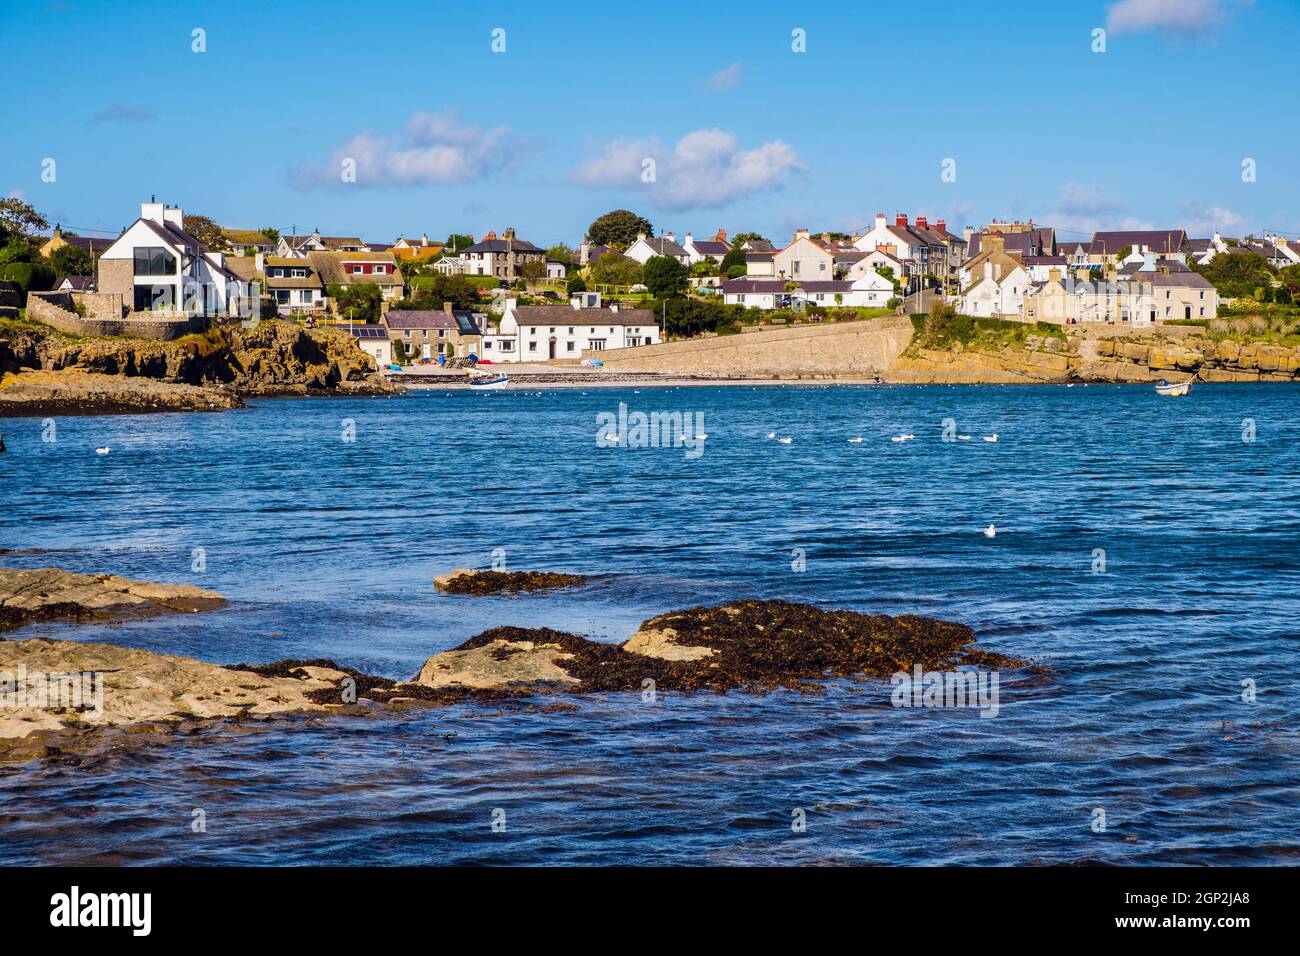 Vista sul mare fino al lungomare del villaggio e alla piccola spiaggia. Moelfre, isola di Anglesey, Galles del nord, Regno Unito, Gran Bretagna, Europa Foto Stock